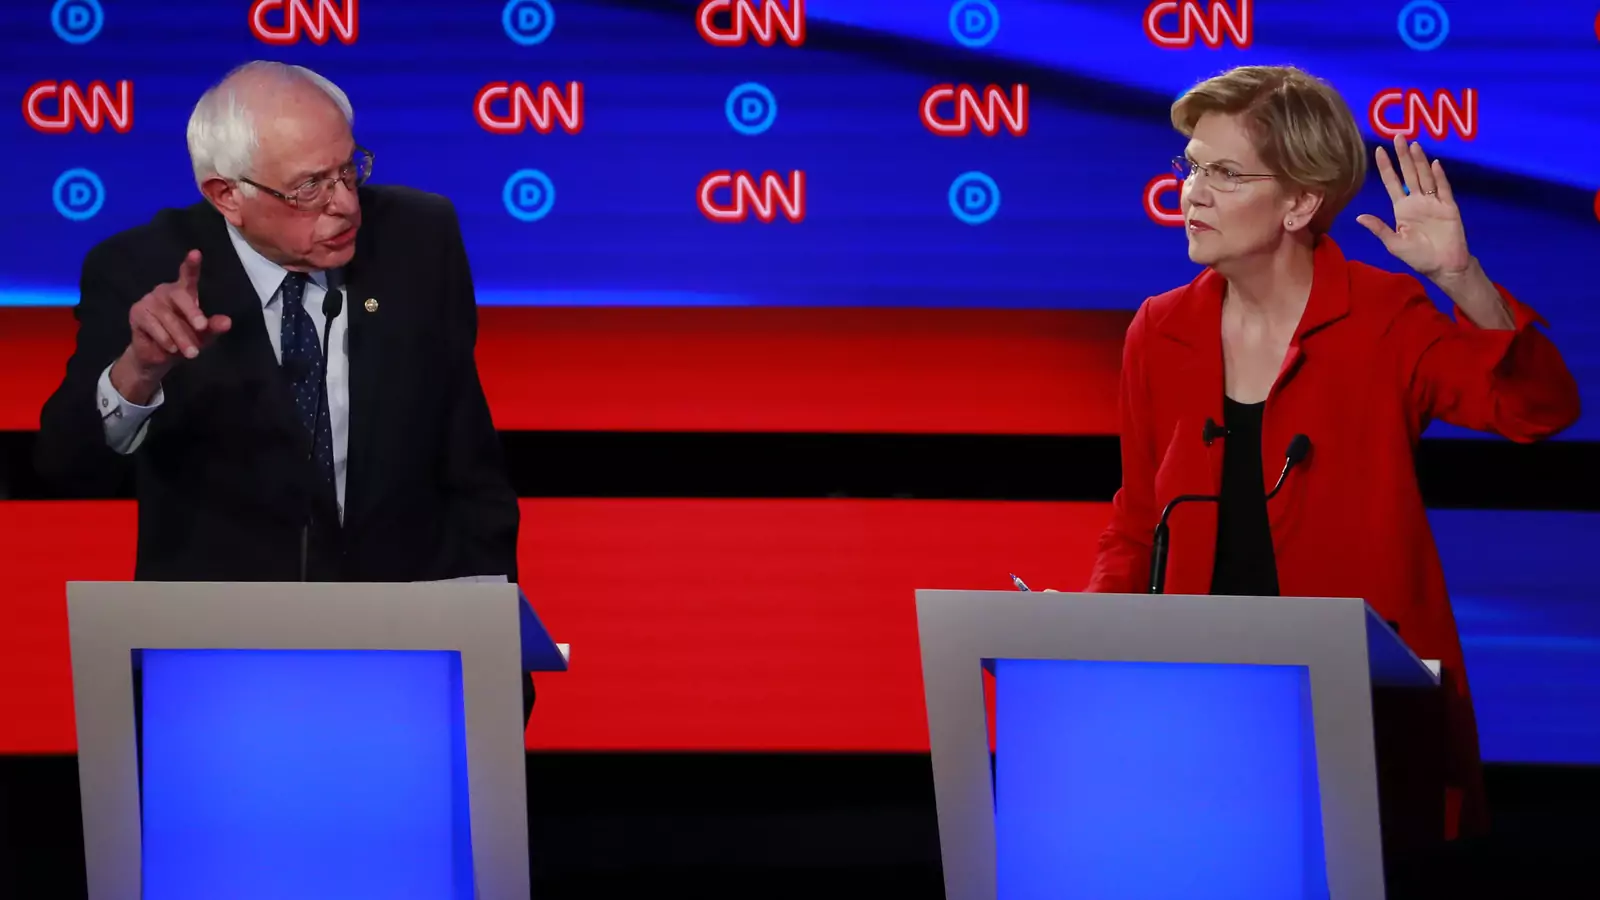 U.S. Senator Bernie Sanders and U.S. Senator Elizabeth Warren participate in the first night of the second 2020 Democratic U.S. presidential debate in Detroit, Michigan, on July 30, 2019.